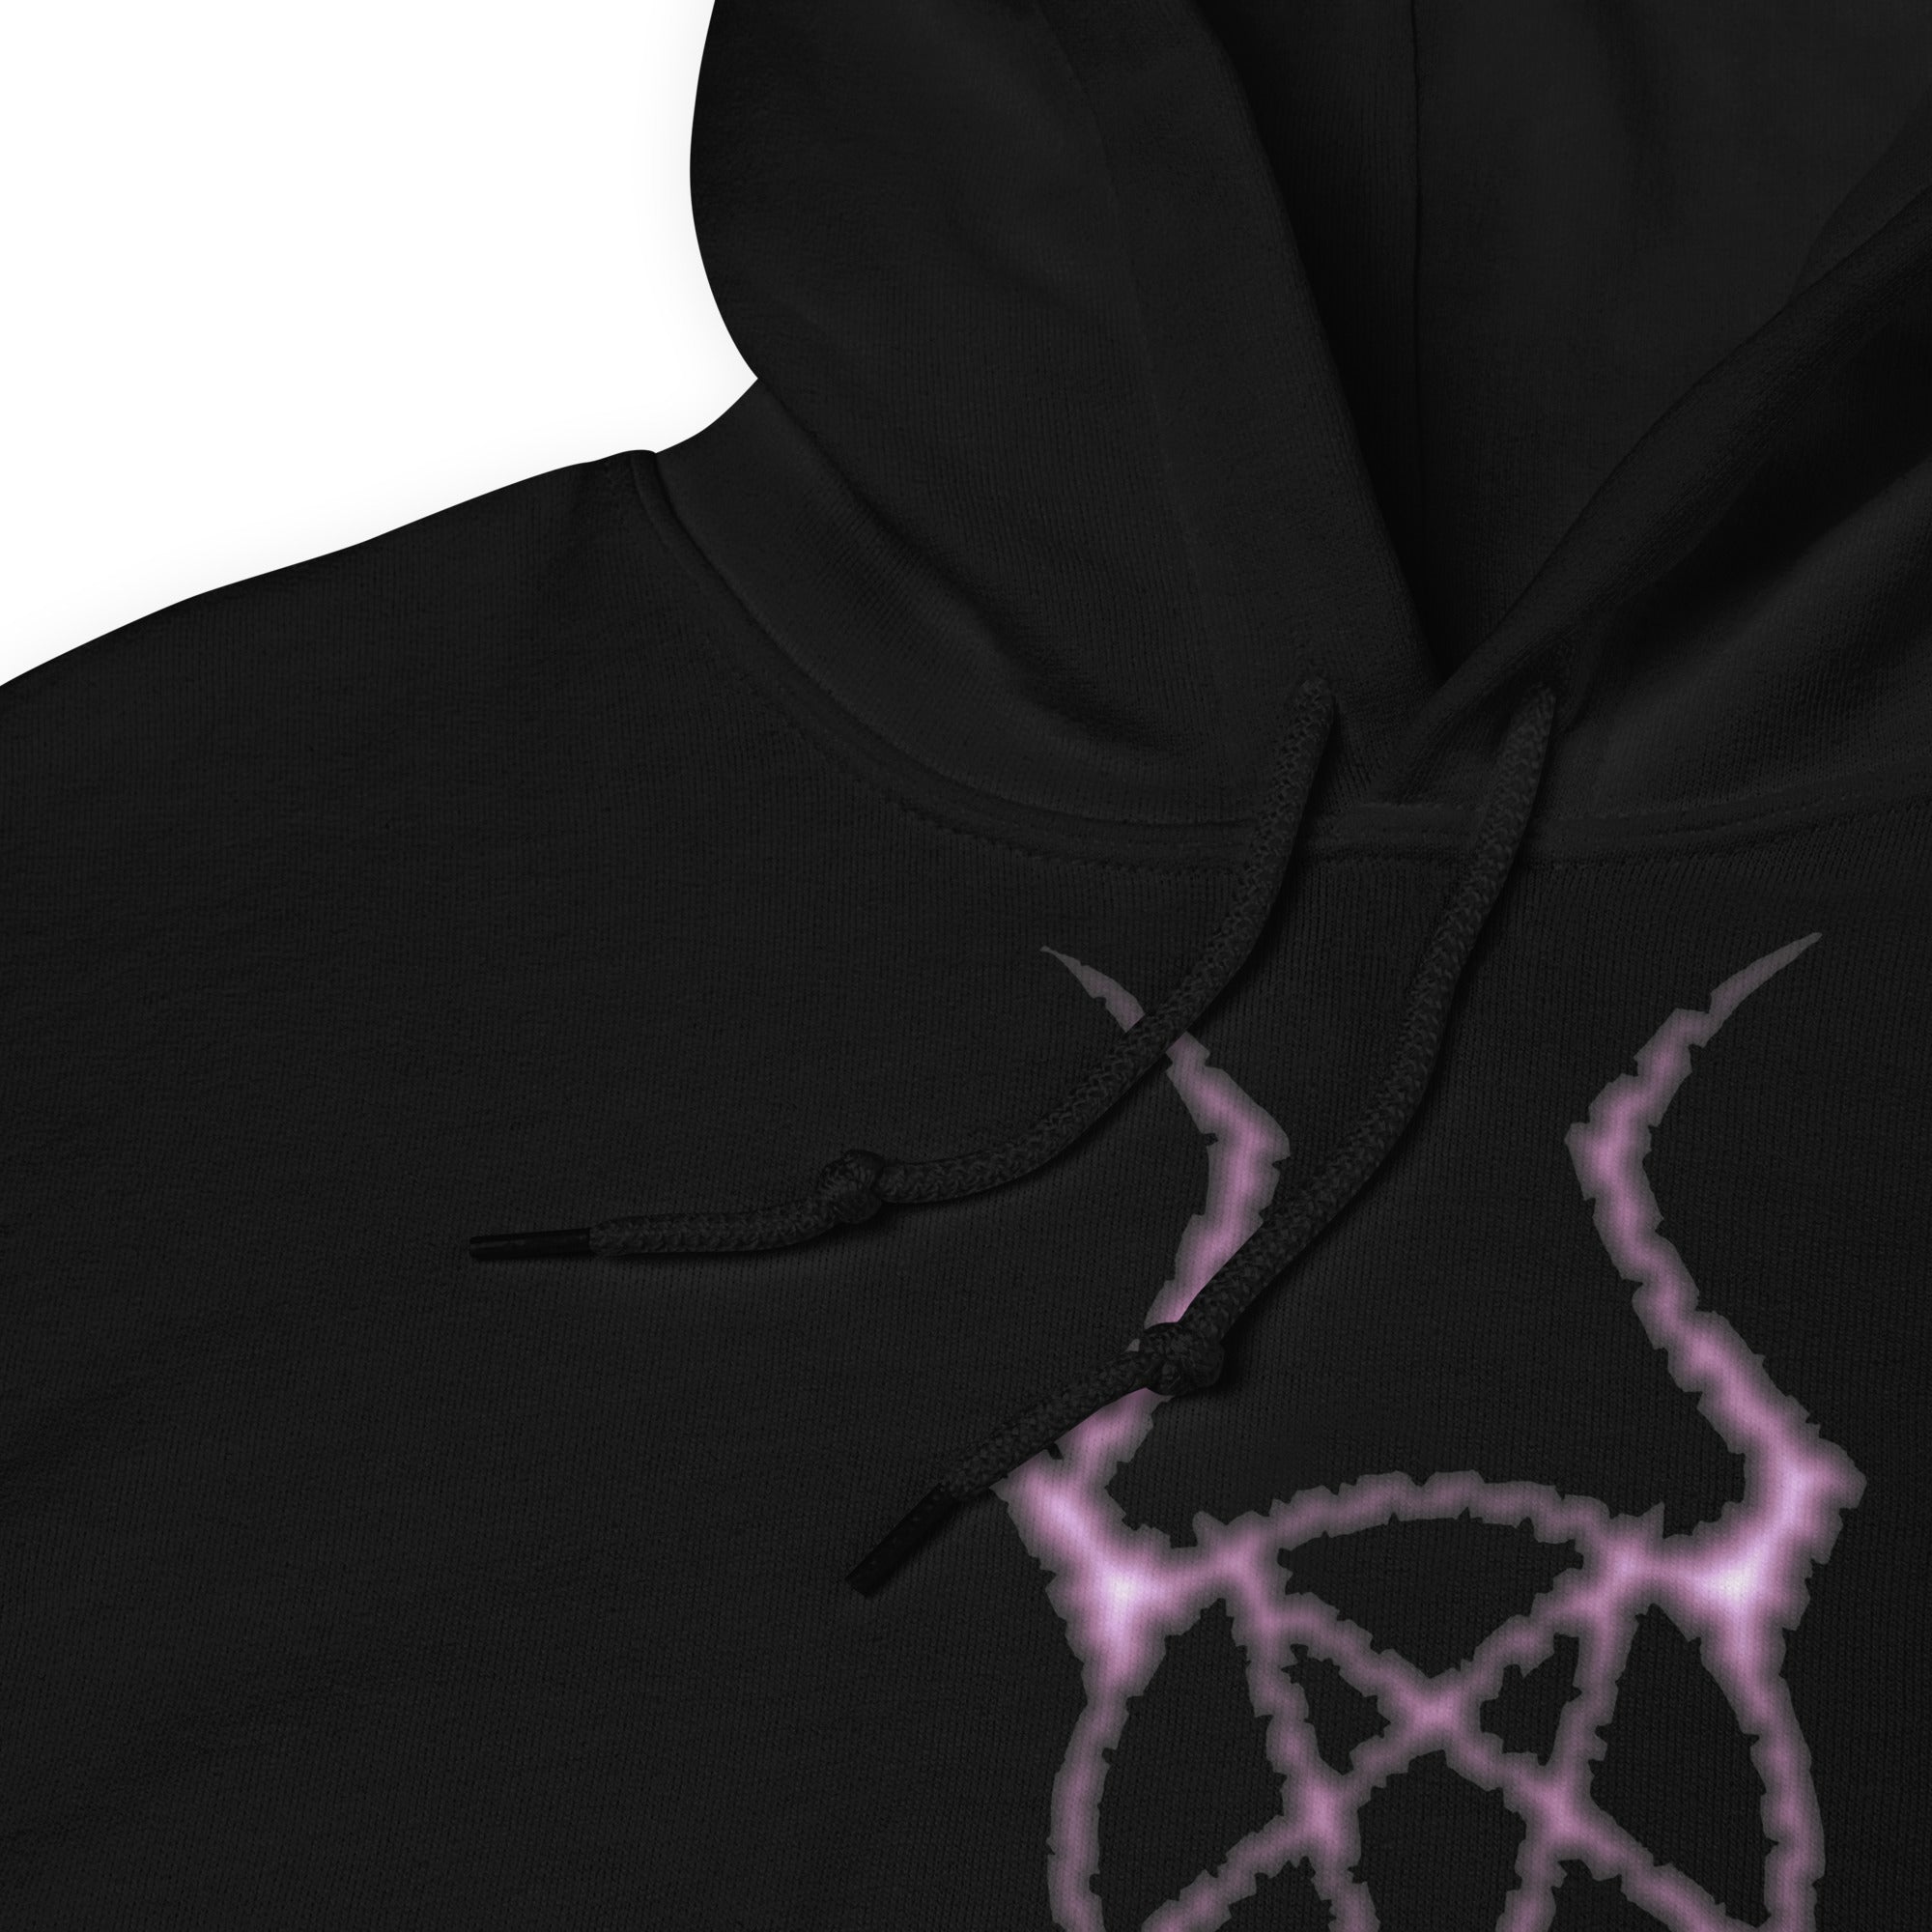 Dark Forces Horned Pentacross Pentagram Cross Unisex Hoodie Sweatshirt - Edge of Life Designs